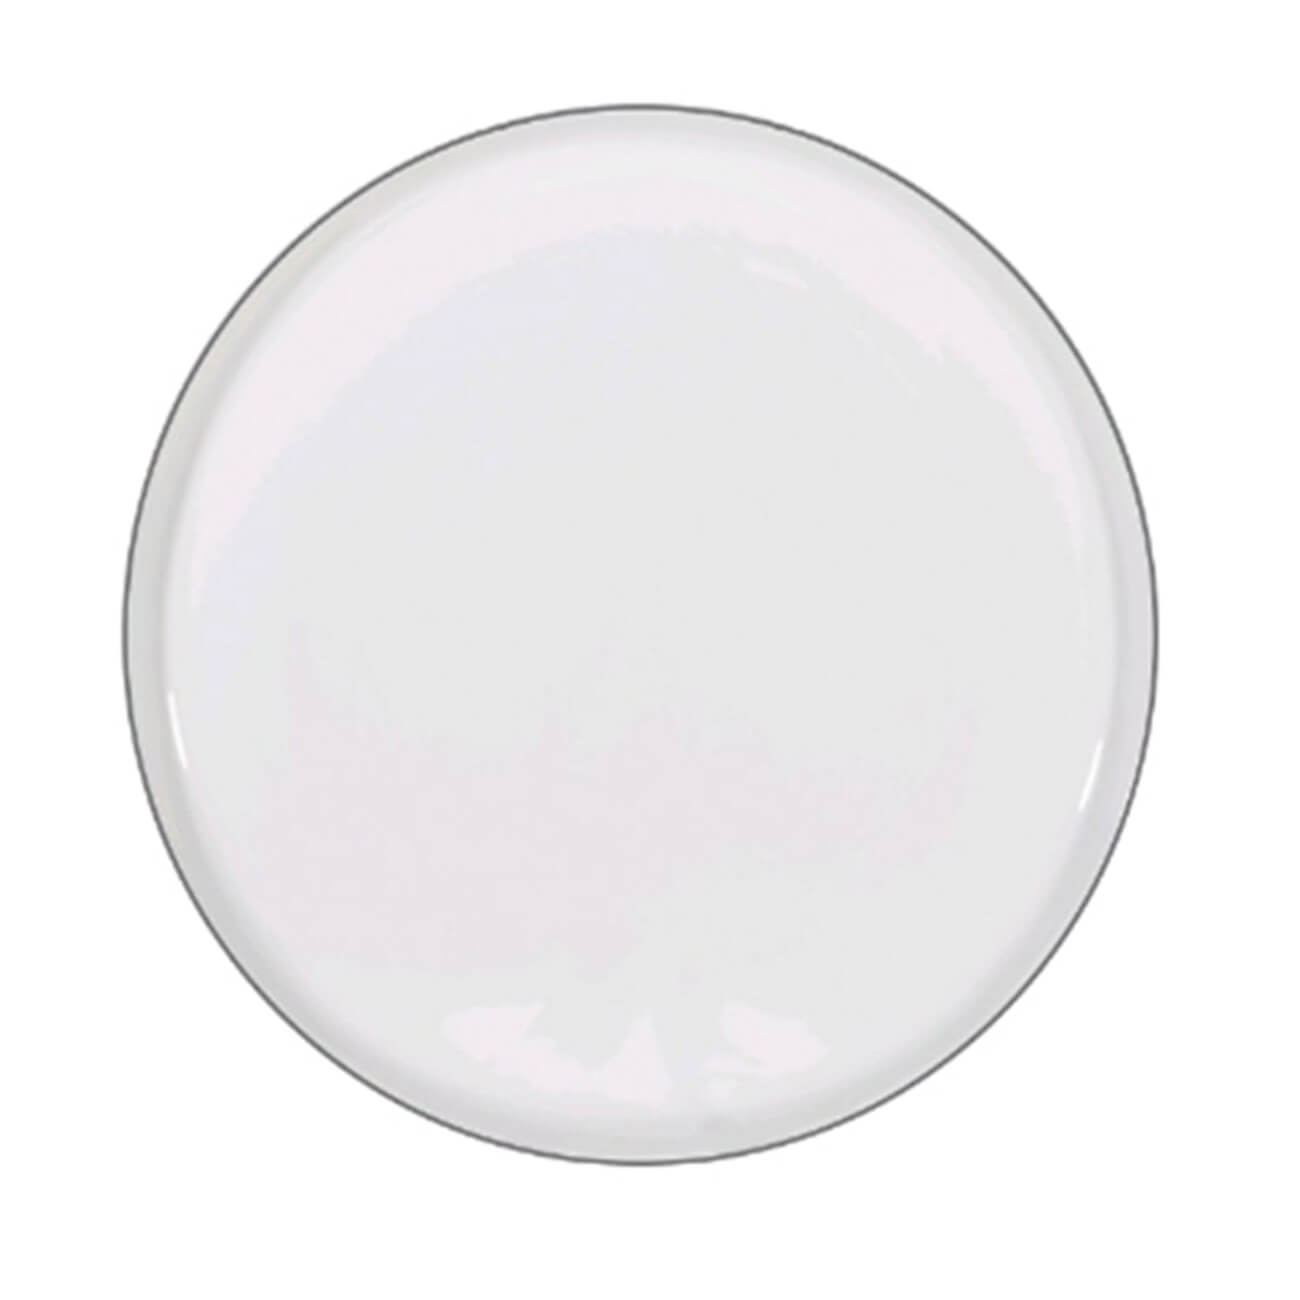 Тарелка десертная, 20 см, 2 шт, фарфор F, белая, Ideal silver тарелка десертная luminarc loft abacco 22 см